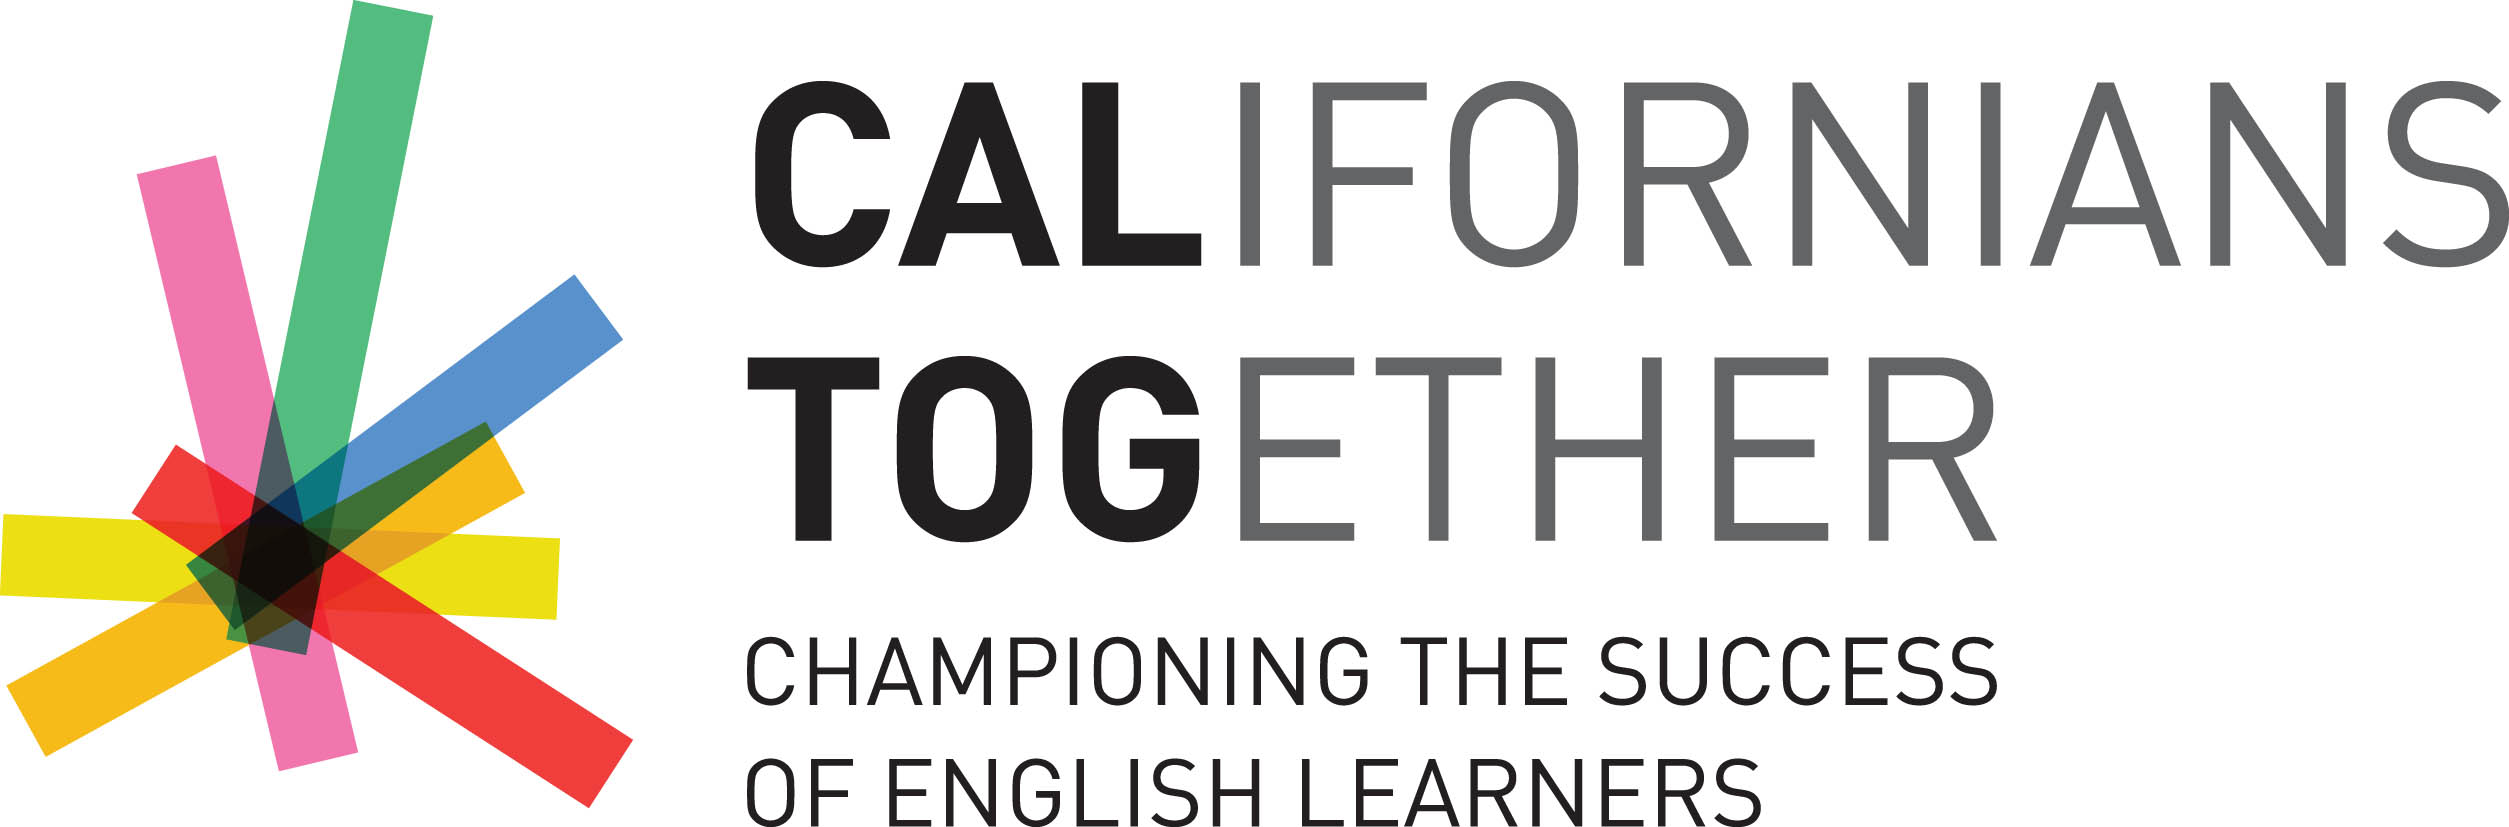 Californians Together Logo.jpg